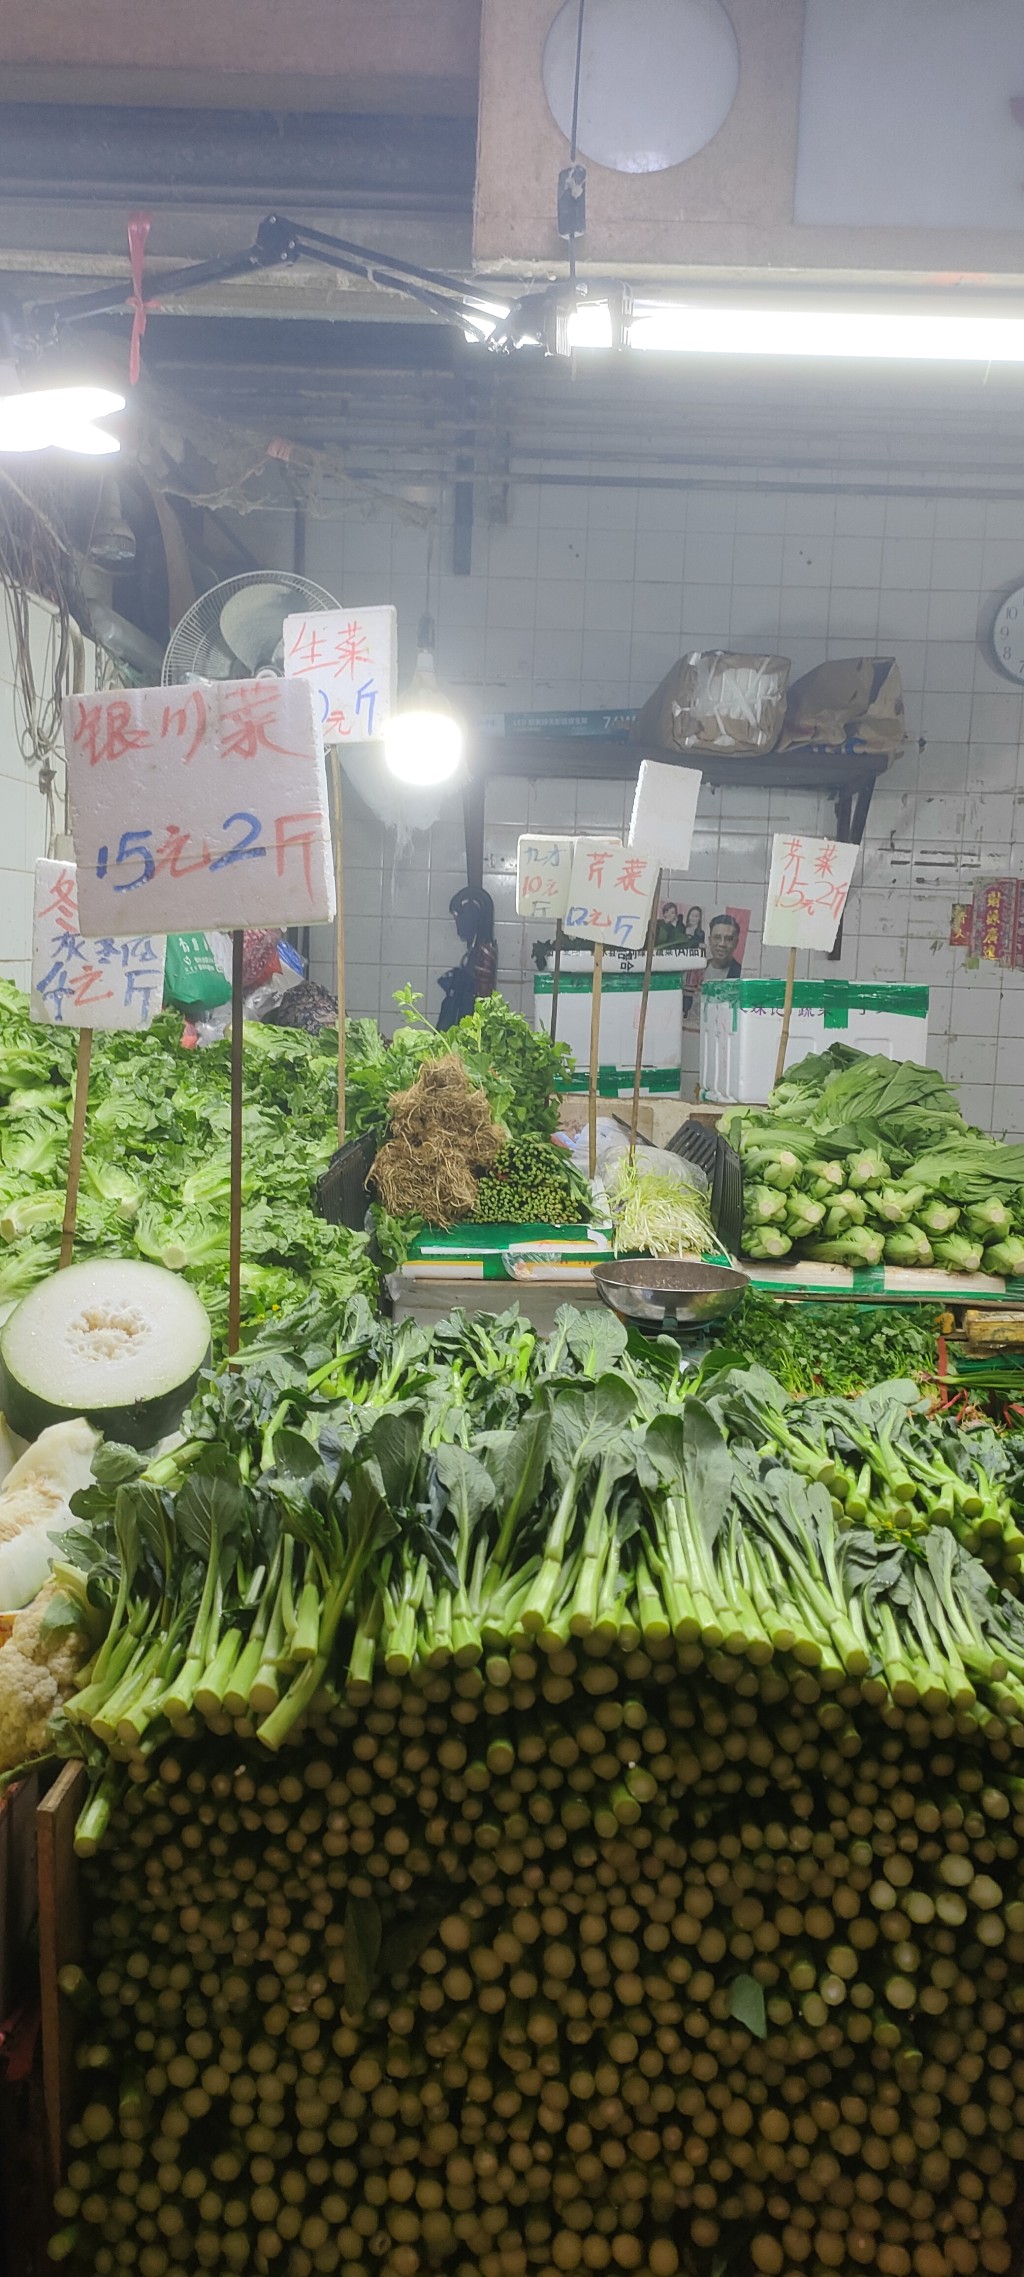 北河街街巿打风后菜如常，银川菜15元两斤。